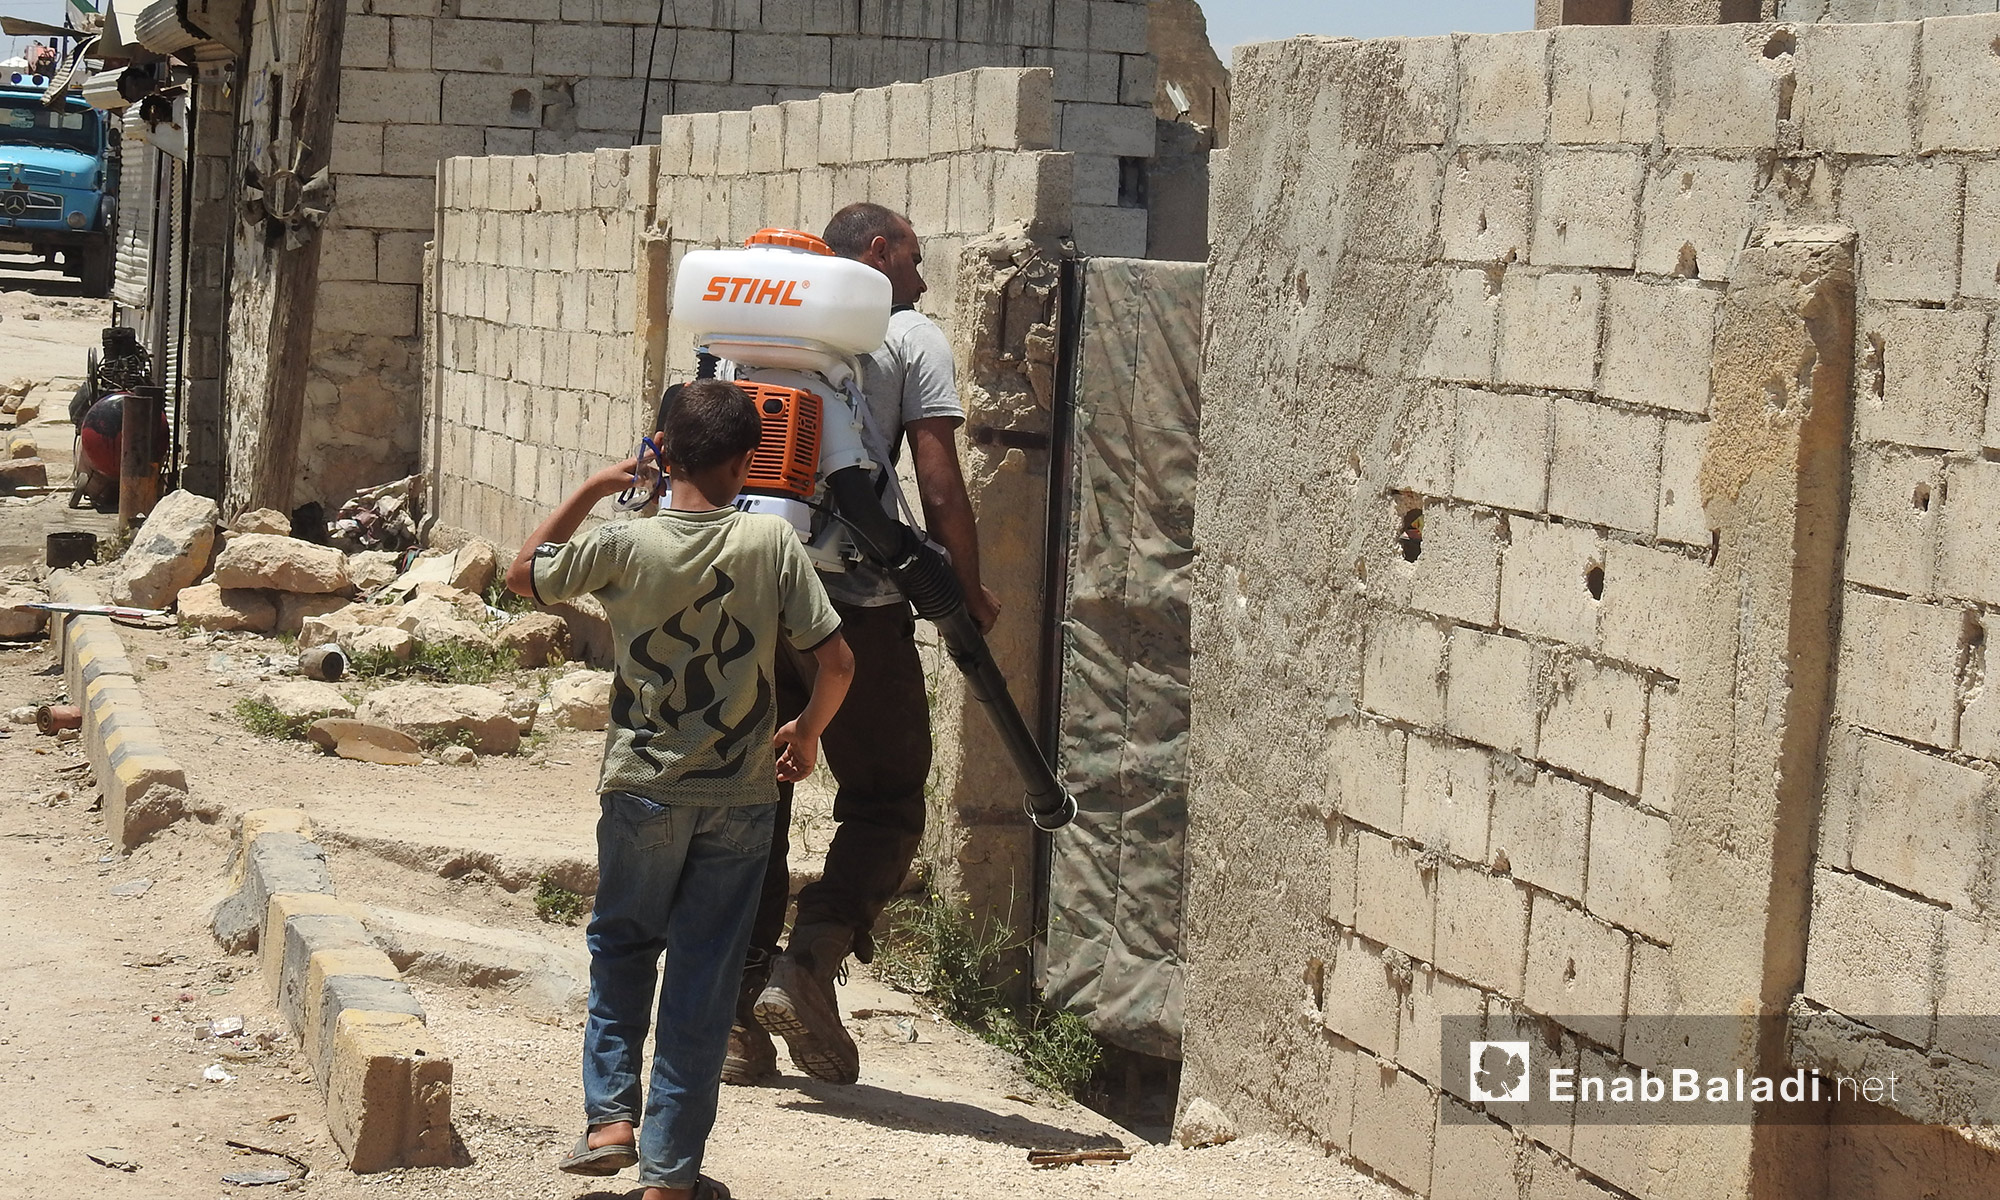 المرحلة الثانية من عملية رش المبيدات الحشرية، تأتي عن  طريق مضخات محمولة على الظهر تستهدف منازل بلدة صوران شمال حلب - 28 أيار 2017 (عنب بلدي)